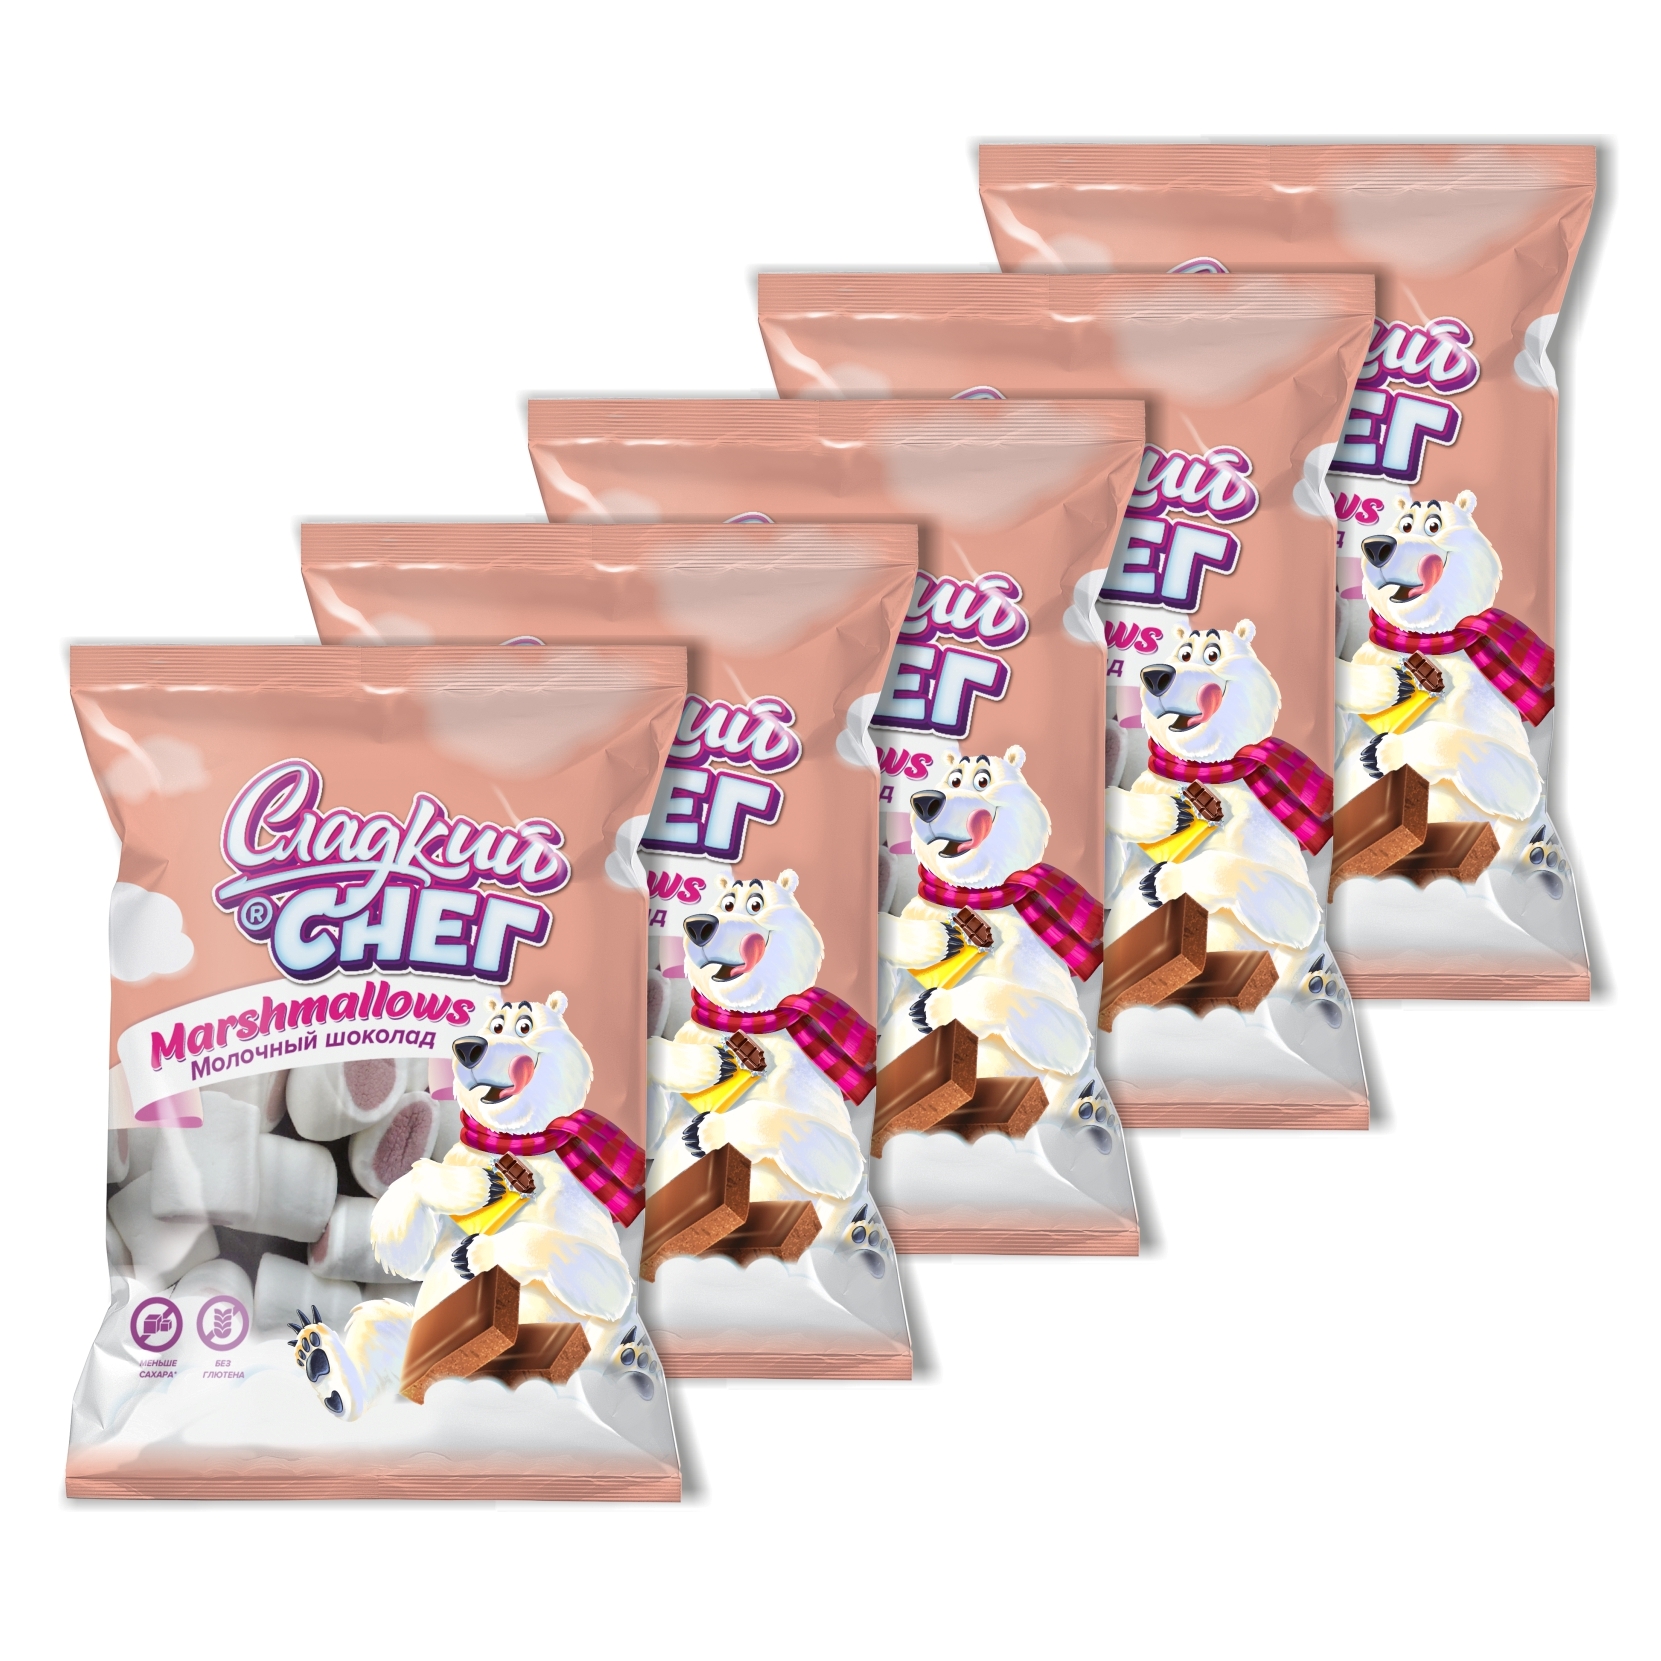 Конфеты неглазированные Сладкий снег Marshmallows со вкусом молочного шоколада 5 шт по 70 г - фото 3